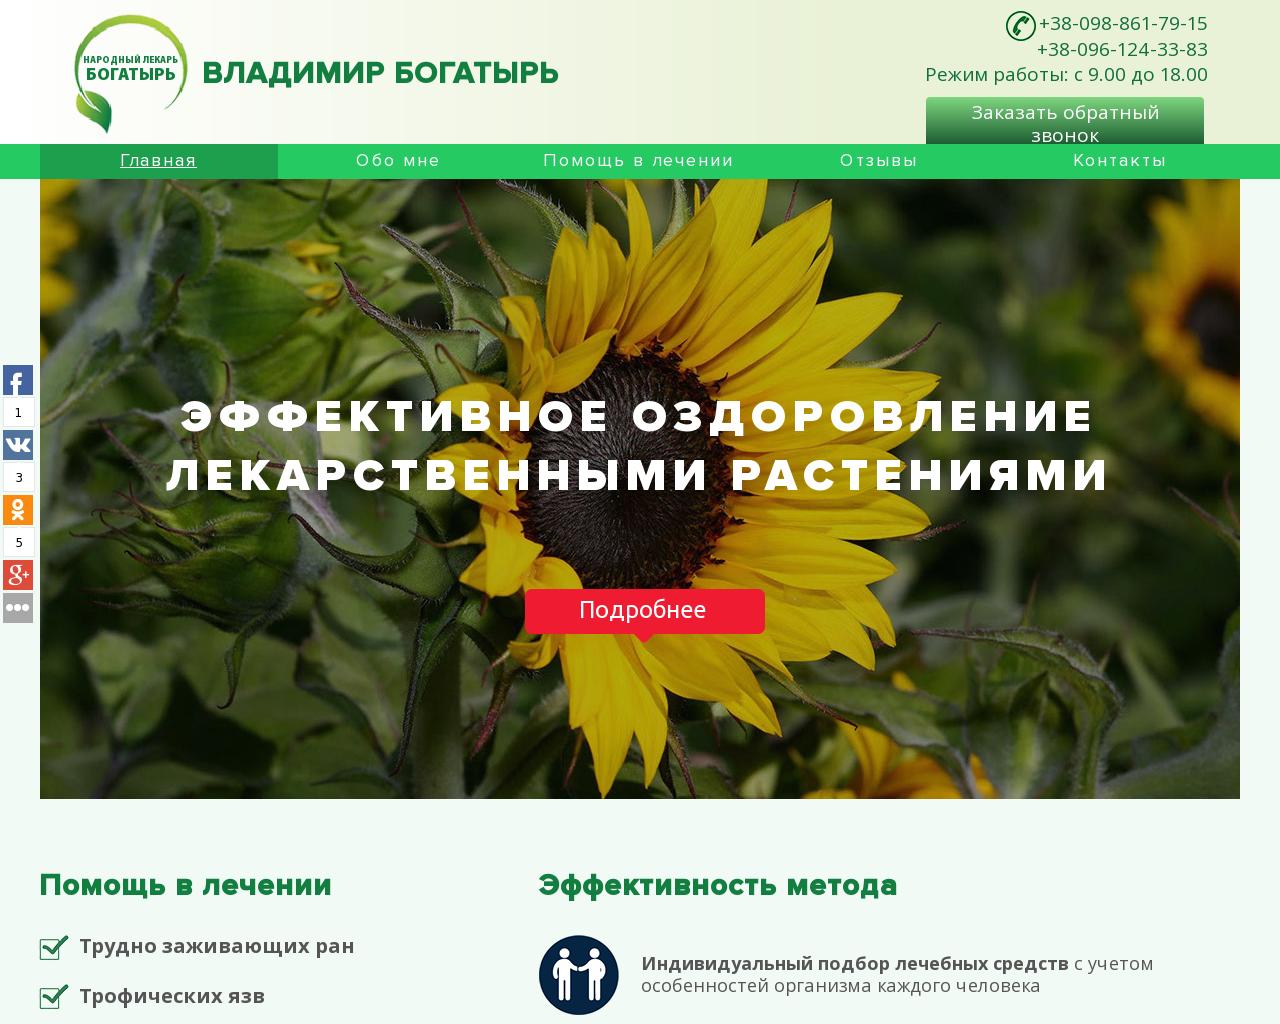 Изображение сайта vbogatir.ru в разрешении 1280x1024